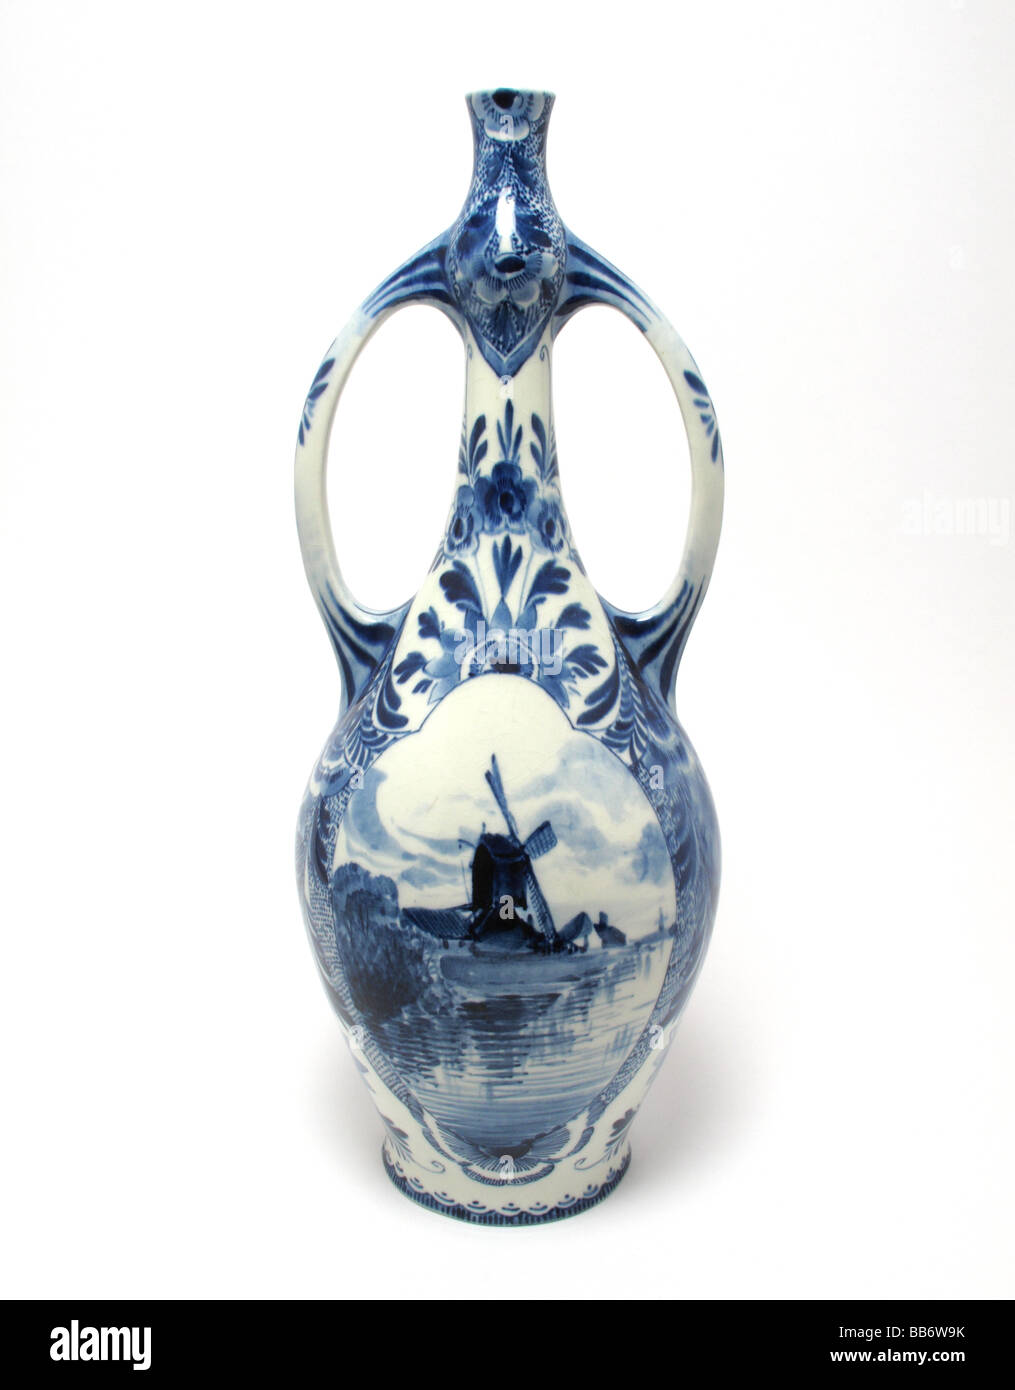 Antike niederländische Delft Vase Jugendstil Form mit handgemalten Szenen von Windmühlen und Canels von Zuid gemacht. Stockfoto